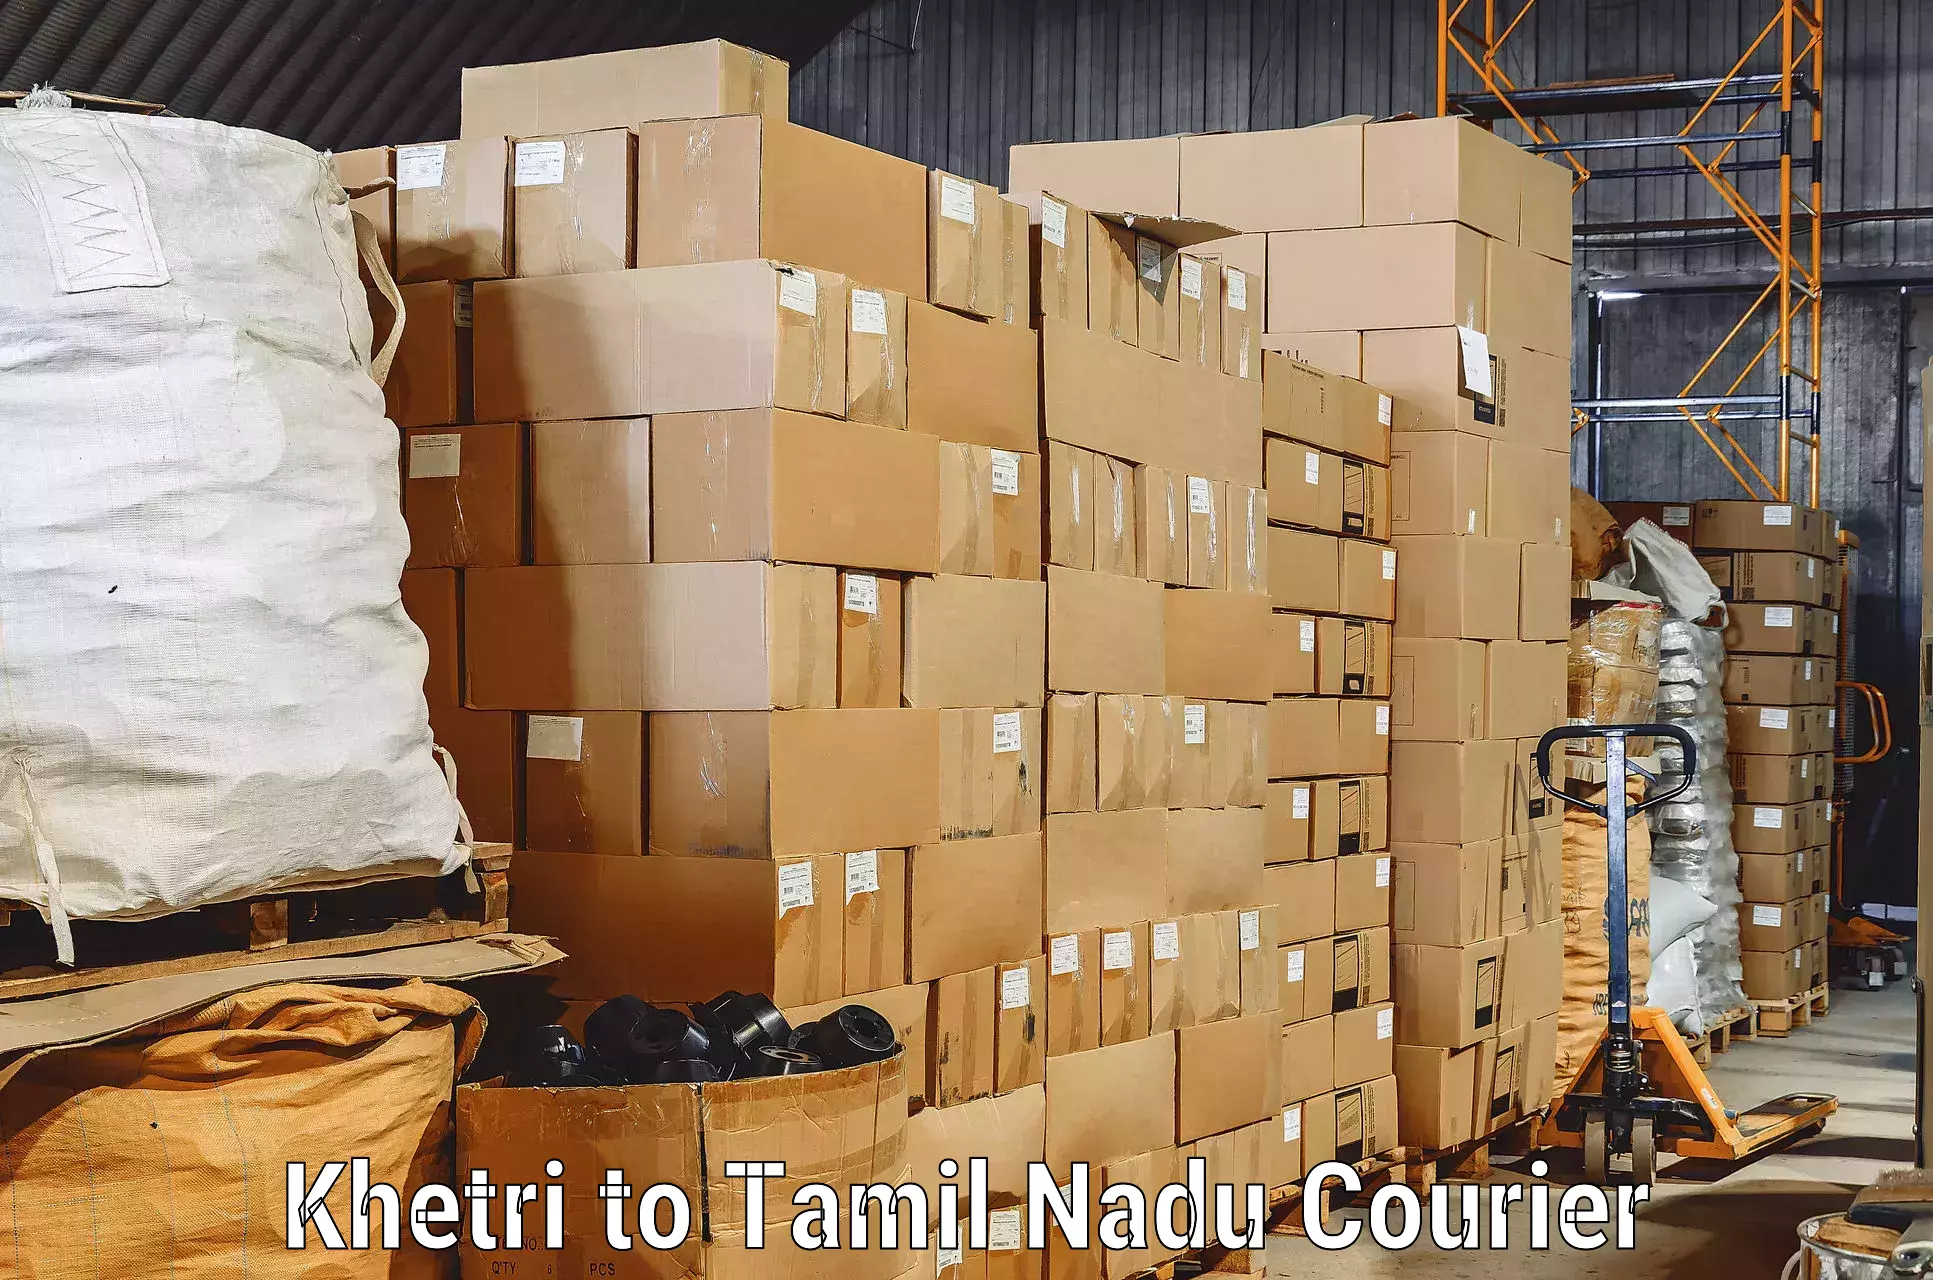 Furniture transport and storage Khetri to Udagamandalam